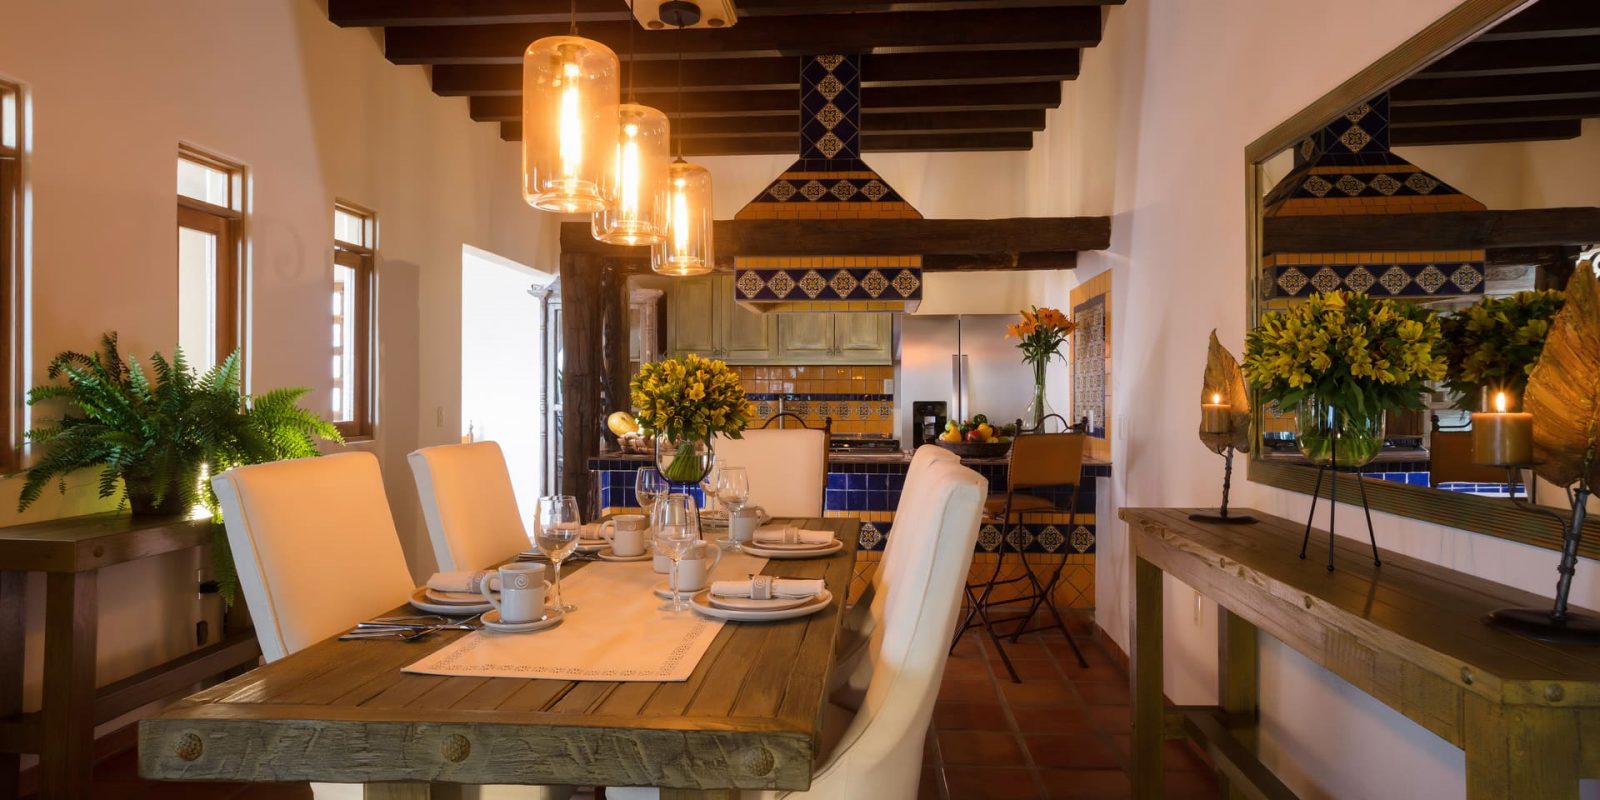 La Casa de Chayo - The dining room